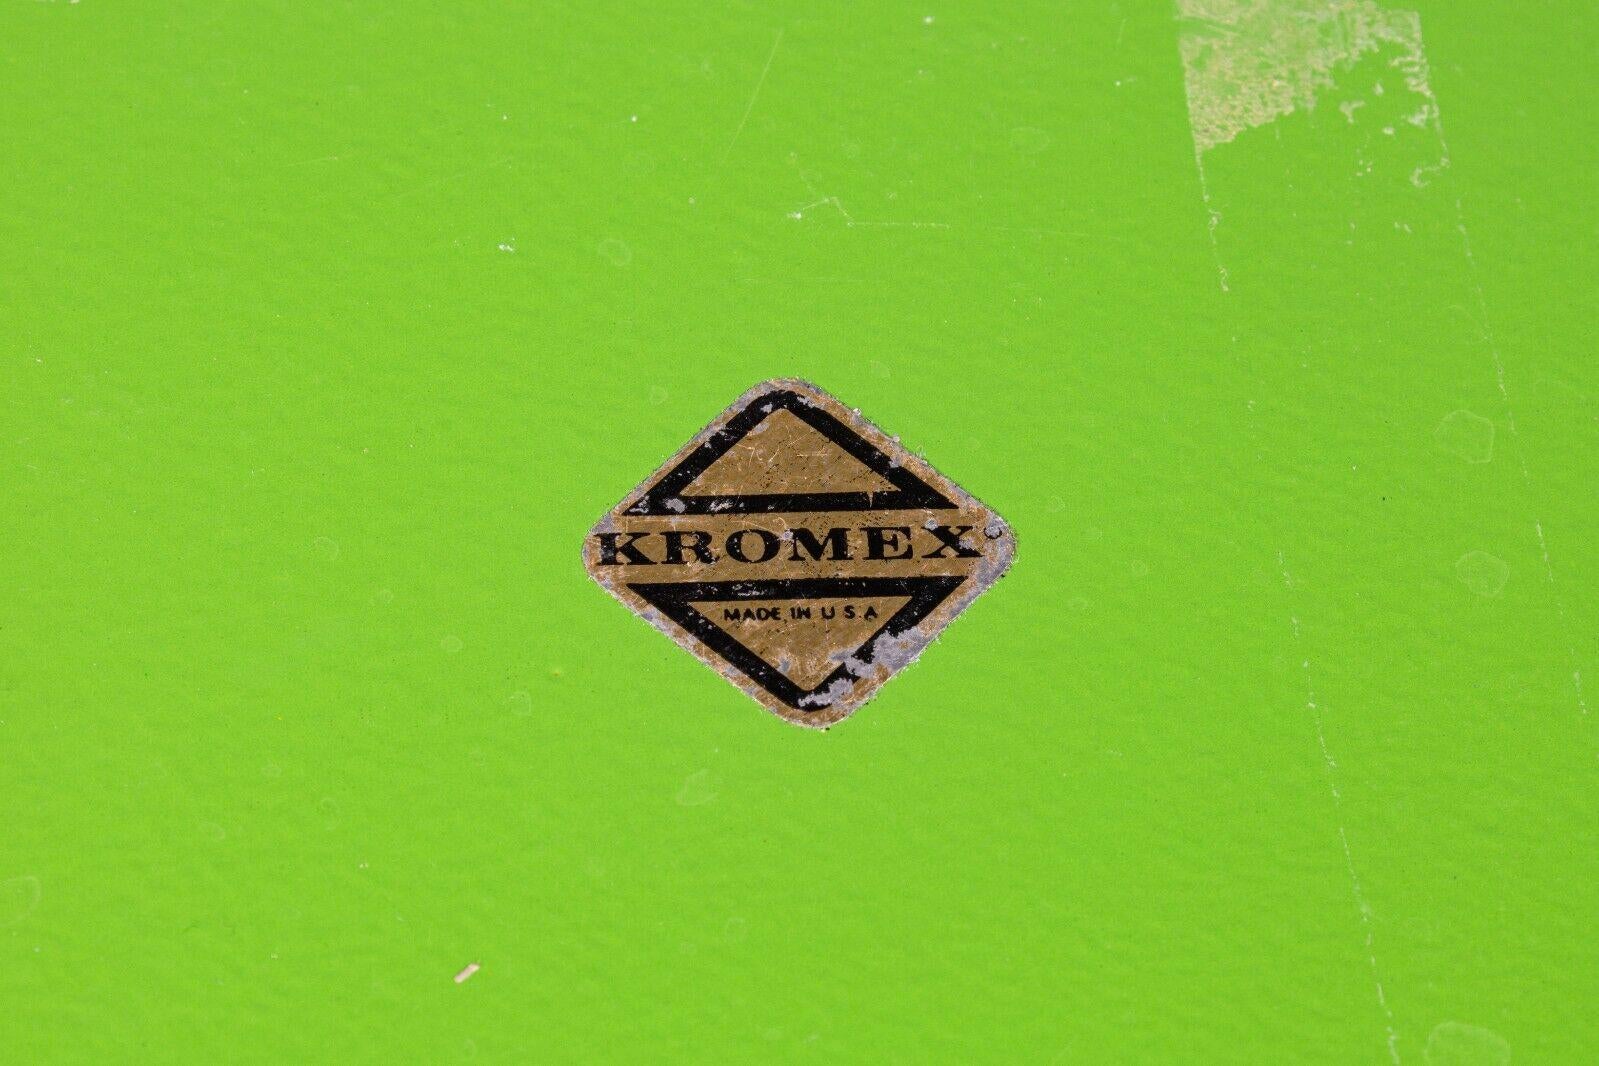 kromex tray